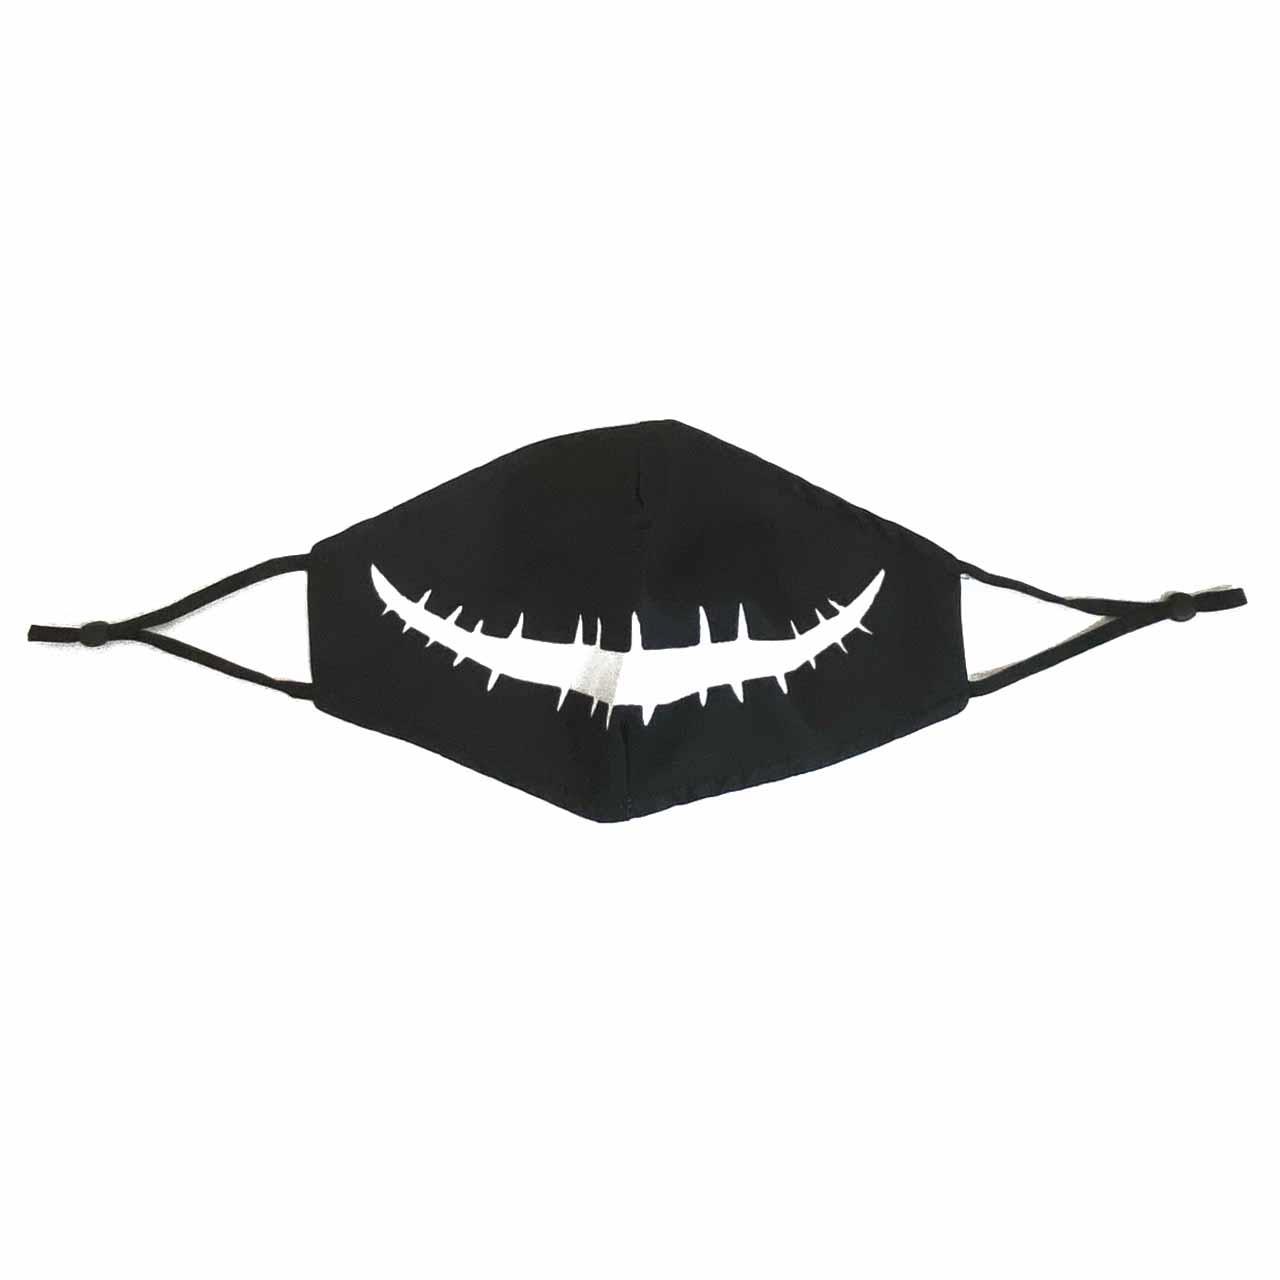 印花成人口罩-黑底白大嘴(衛生用品，恕不退貨，無法接受者勿下單)